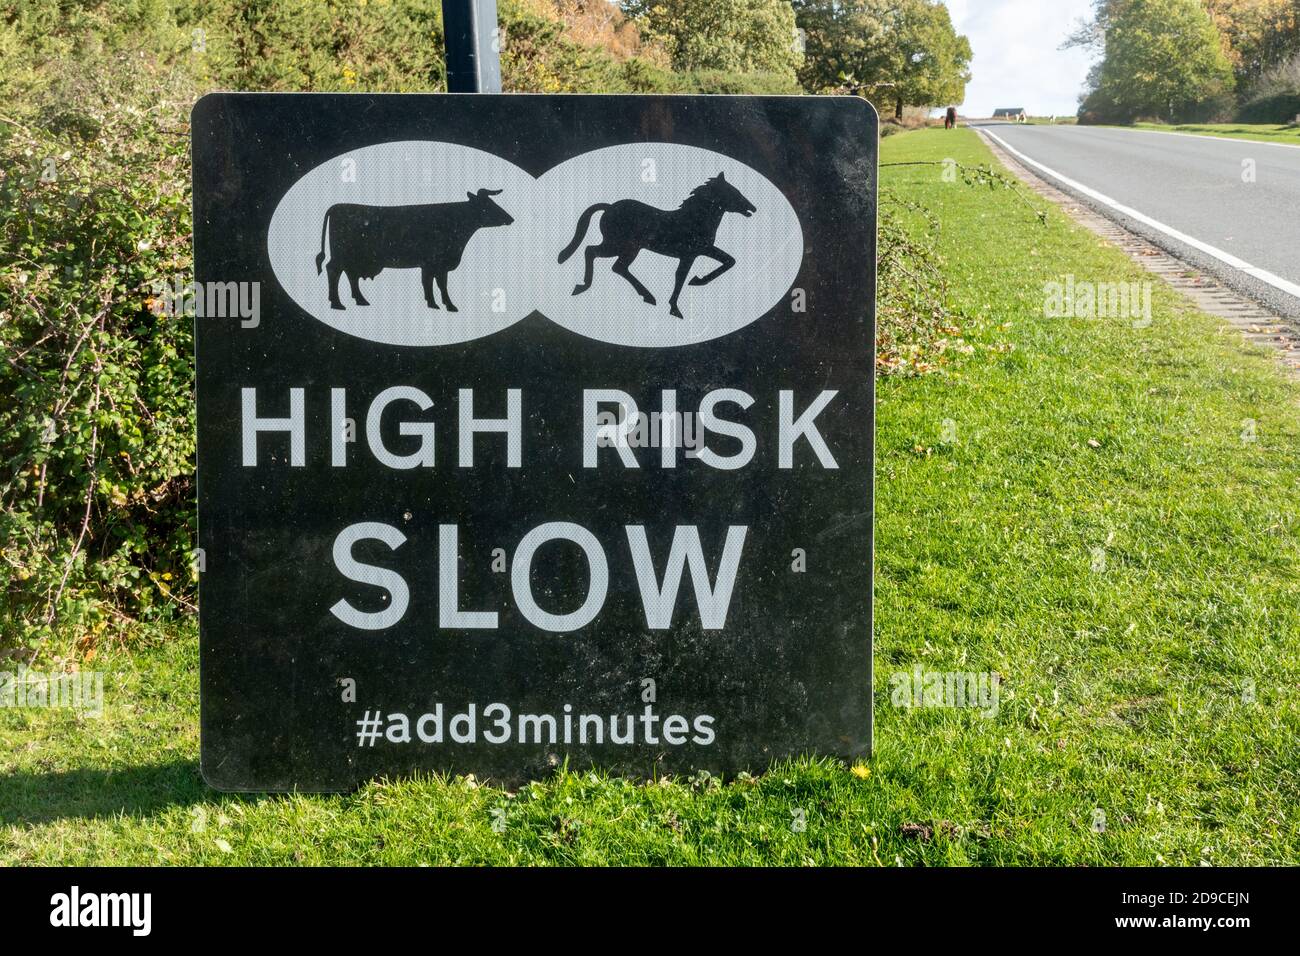 Signalisation routière avertissement des animaux sur la route avec le message risque élevé lent, ajouter 3 minutes, New Forest National Park, Hampshire, Angleterre, Royaume-Uni Banque D'Images